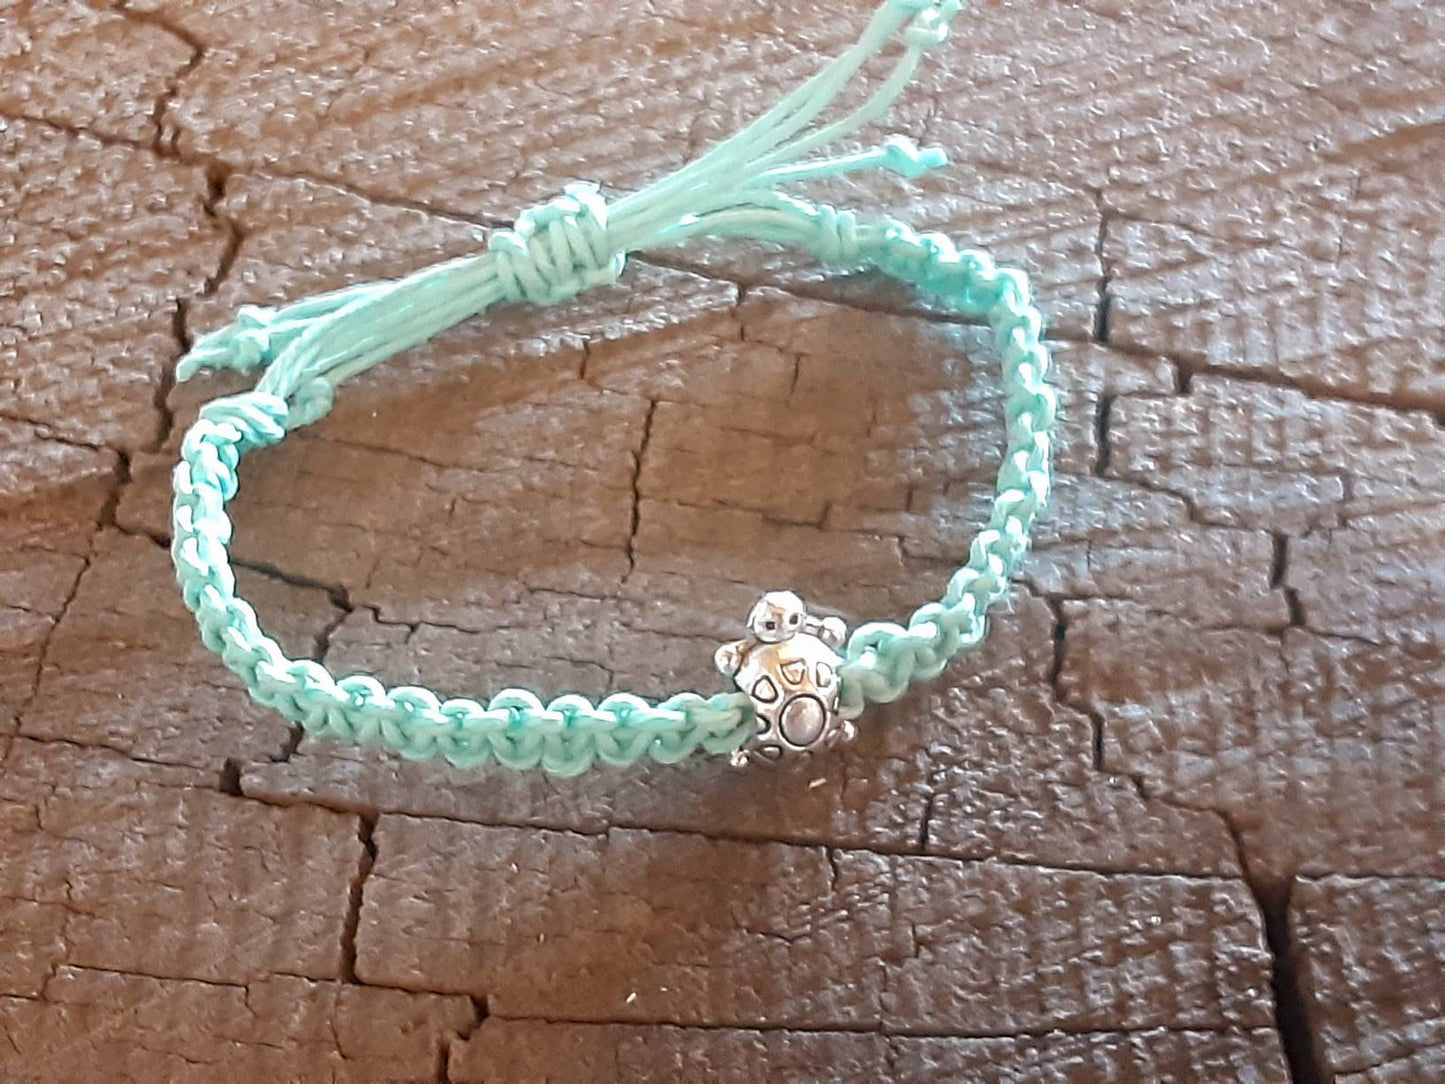 Light blue hemp anklet or bracelet with small tortoise bead